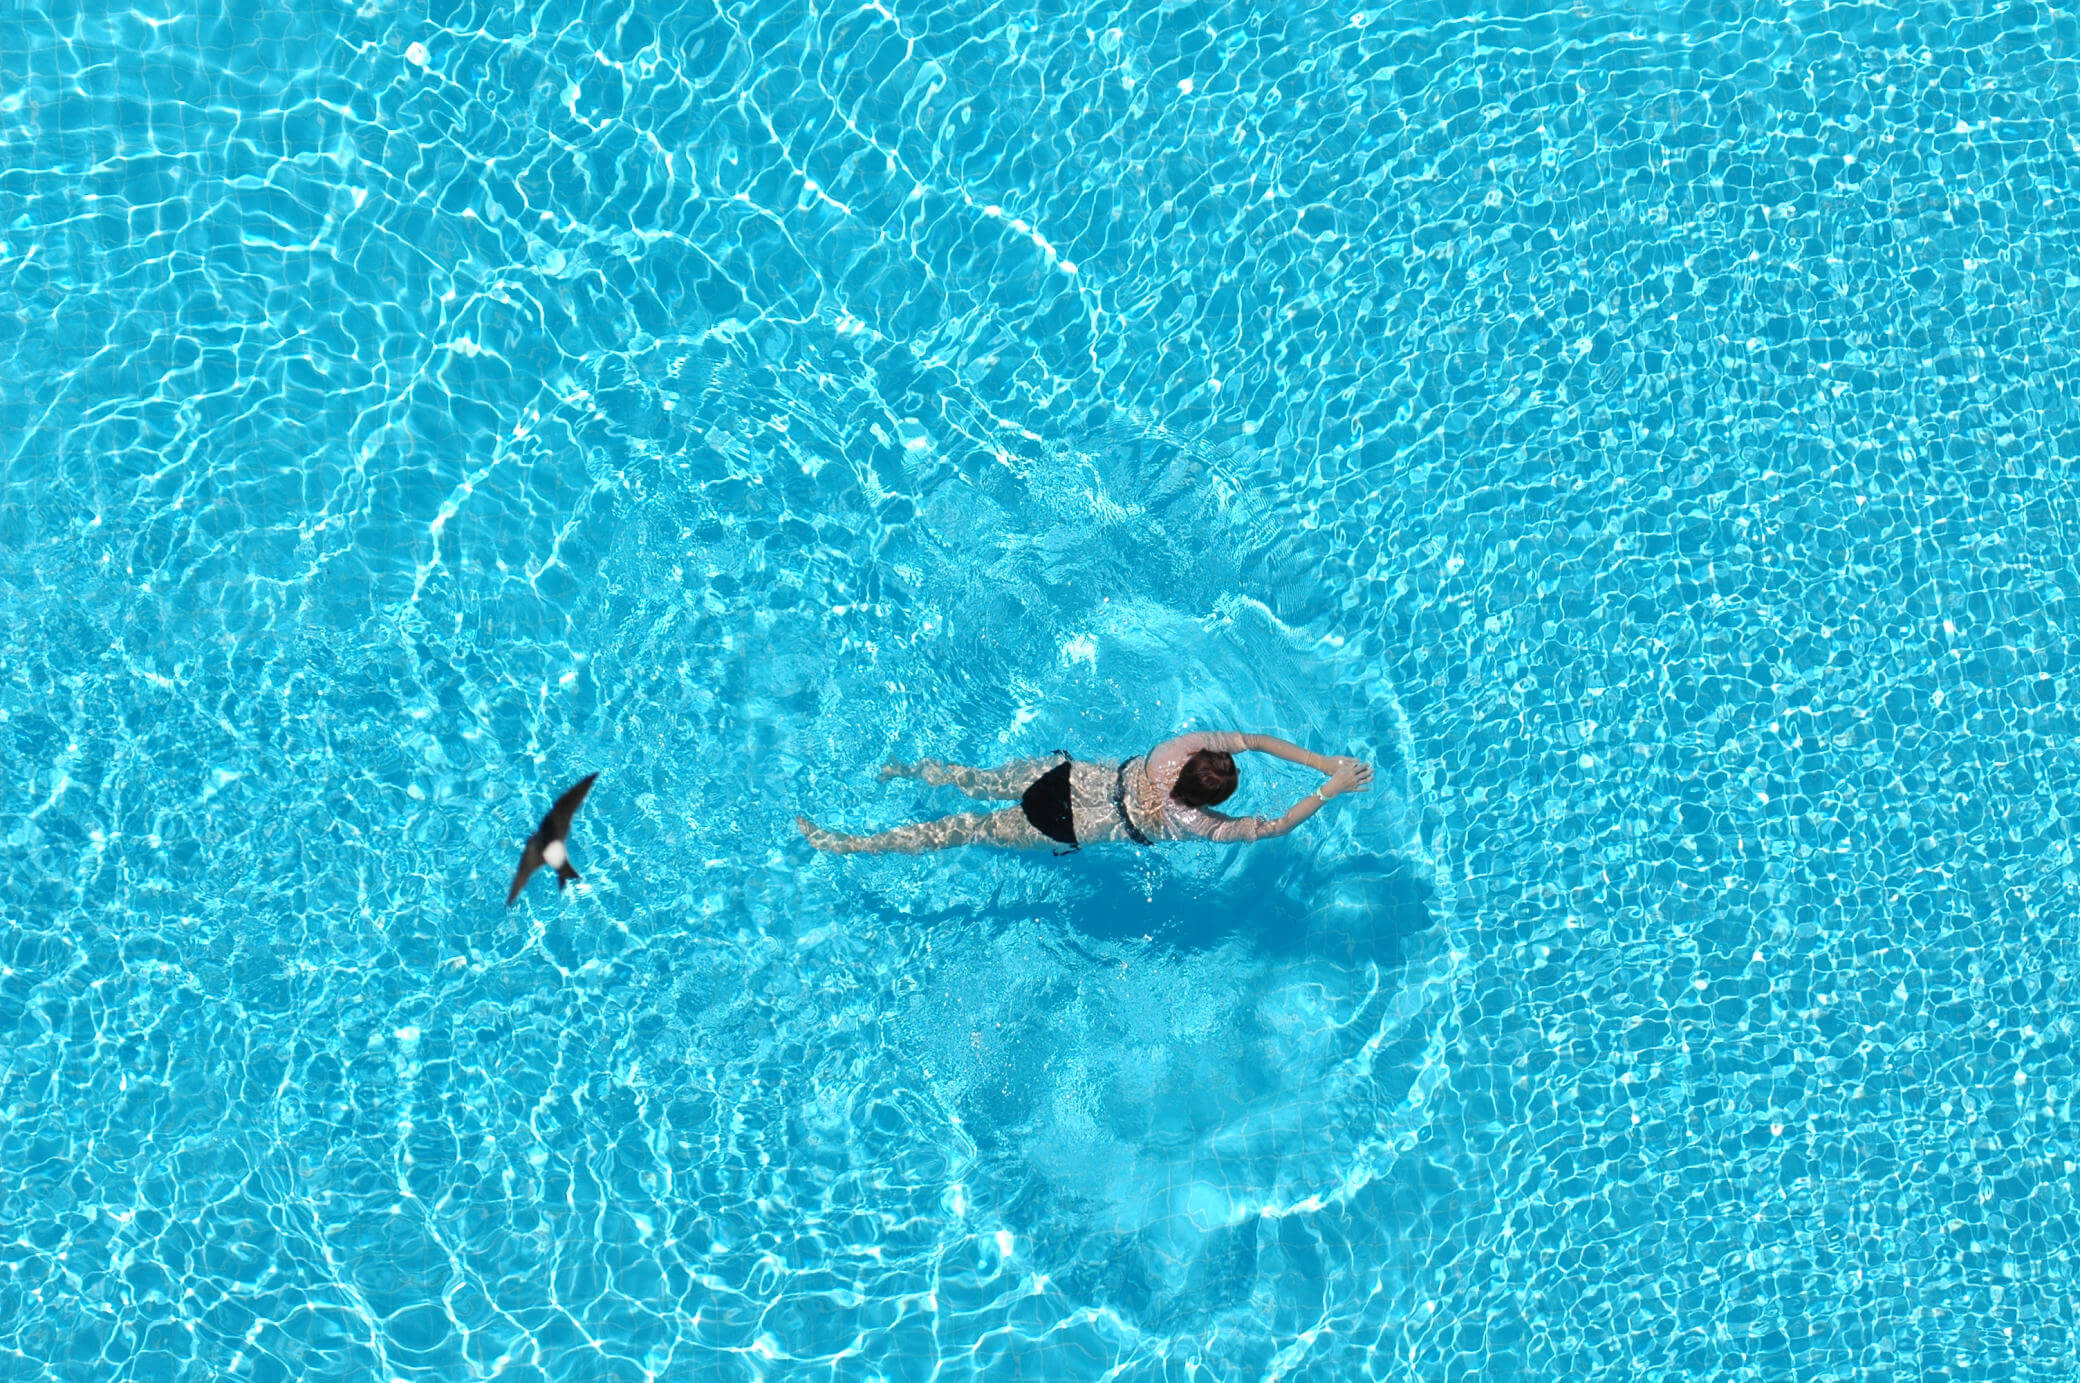 De mooiste zwembaden vindt u op BoekLastminute.com